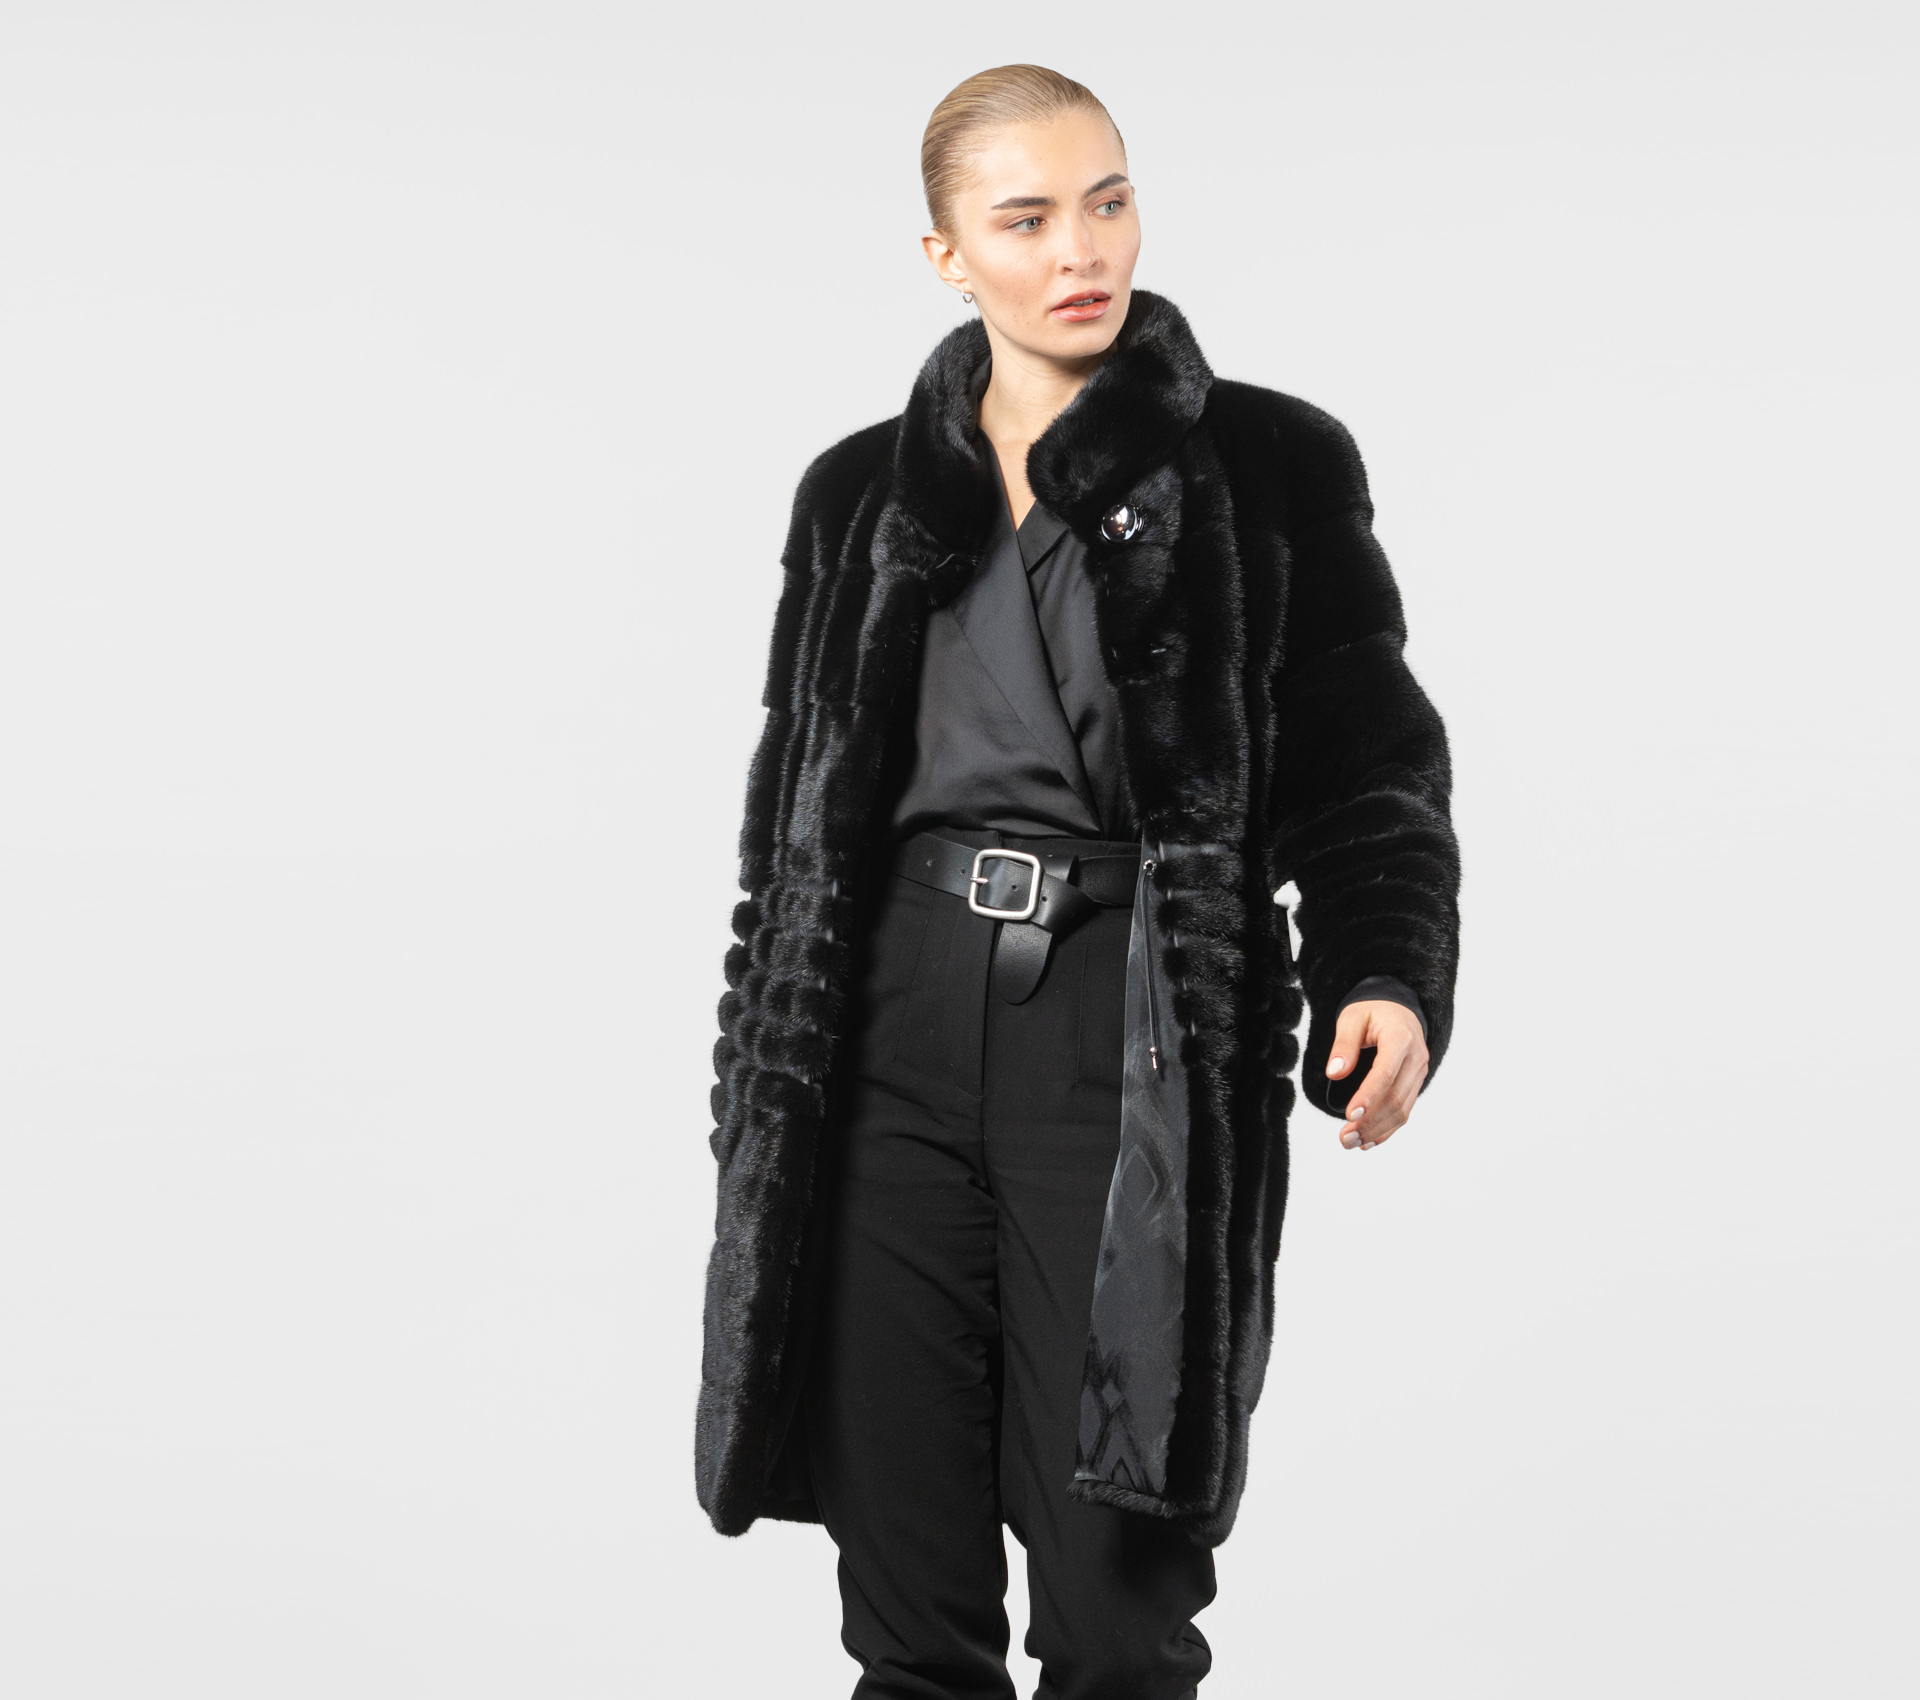 Black Mink Fur Jacket With Leather Details - 100% Real Fur